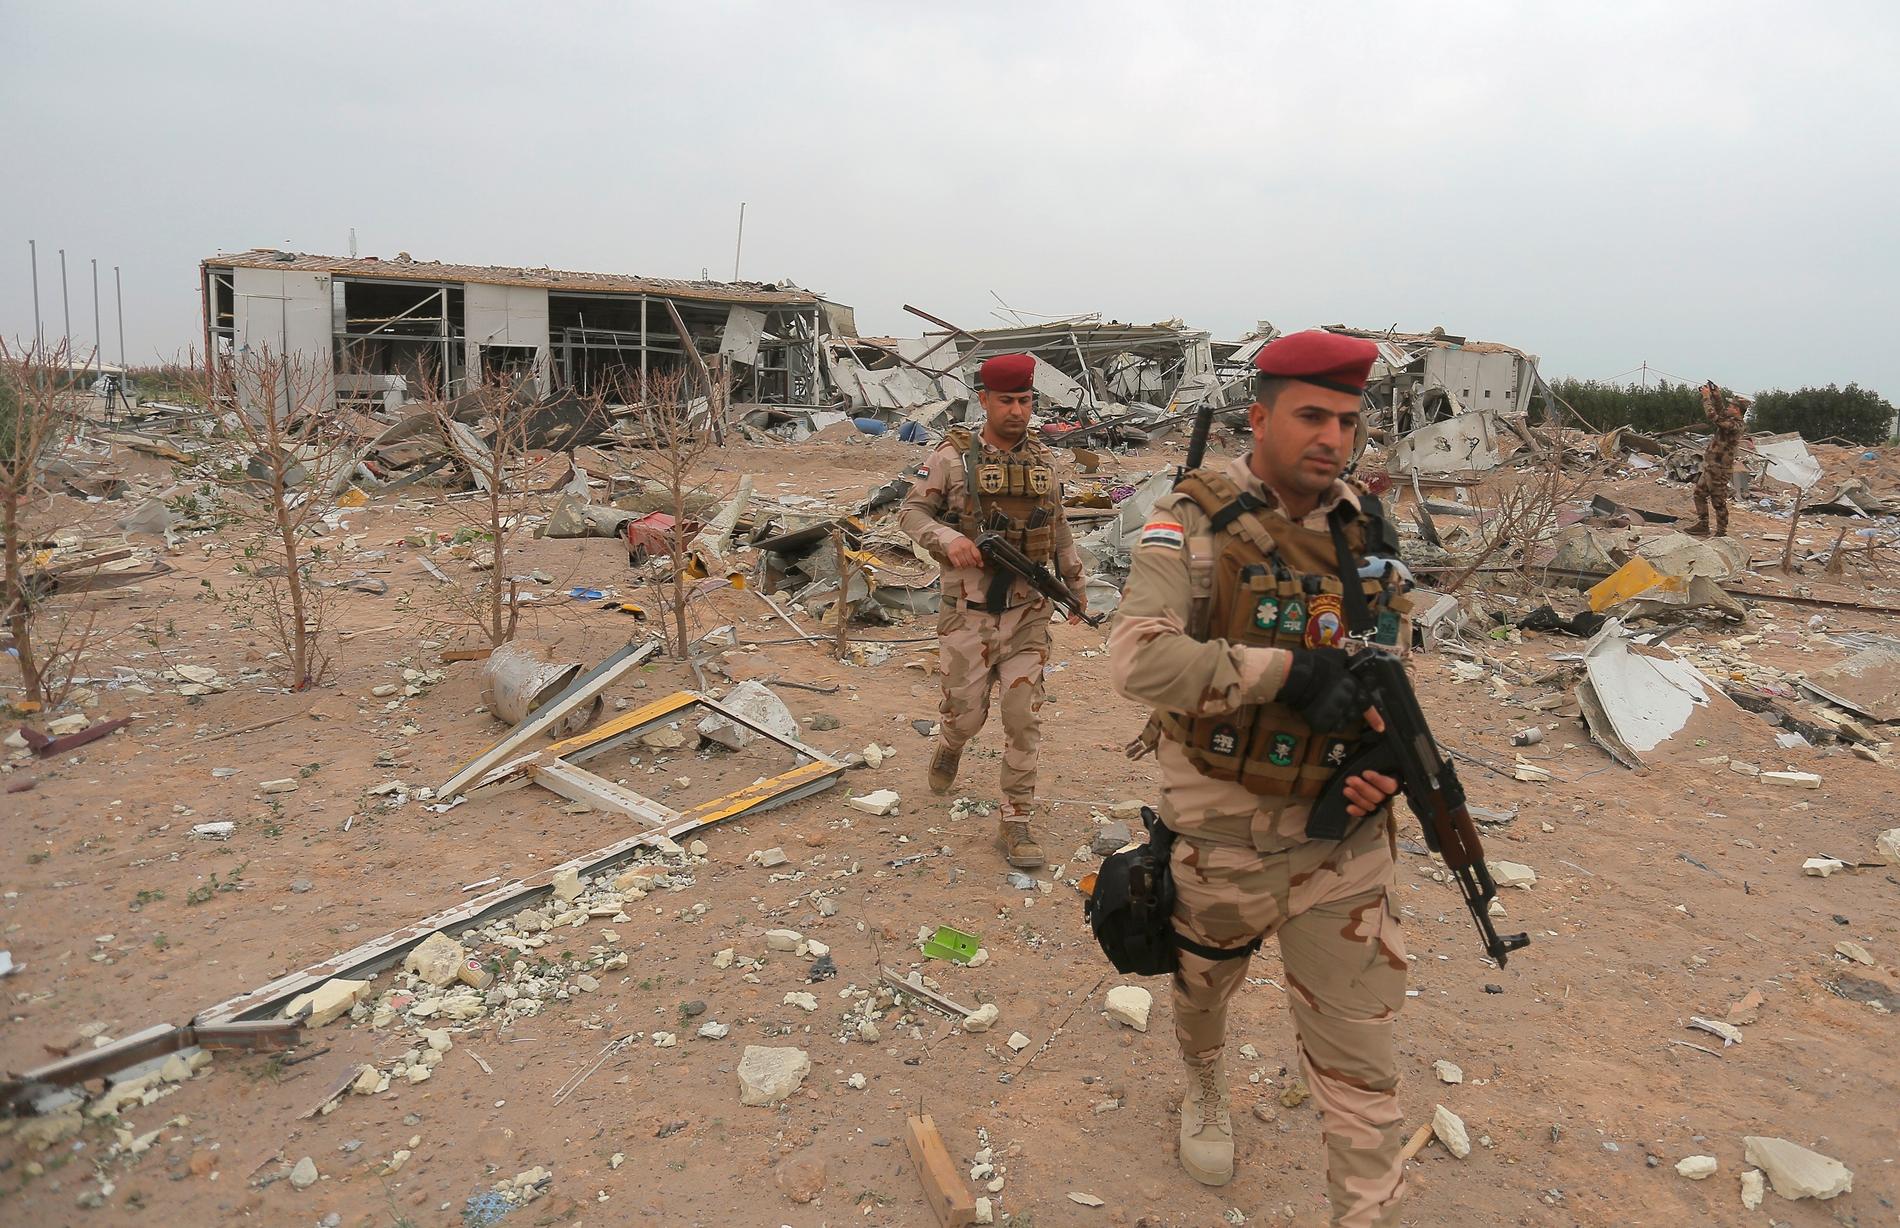 Irakiska soldater inspekterar en flygplats som förstördes i en amerikansk vedergällningsattack efter angreppet på Tajibasen den 11 mars.